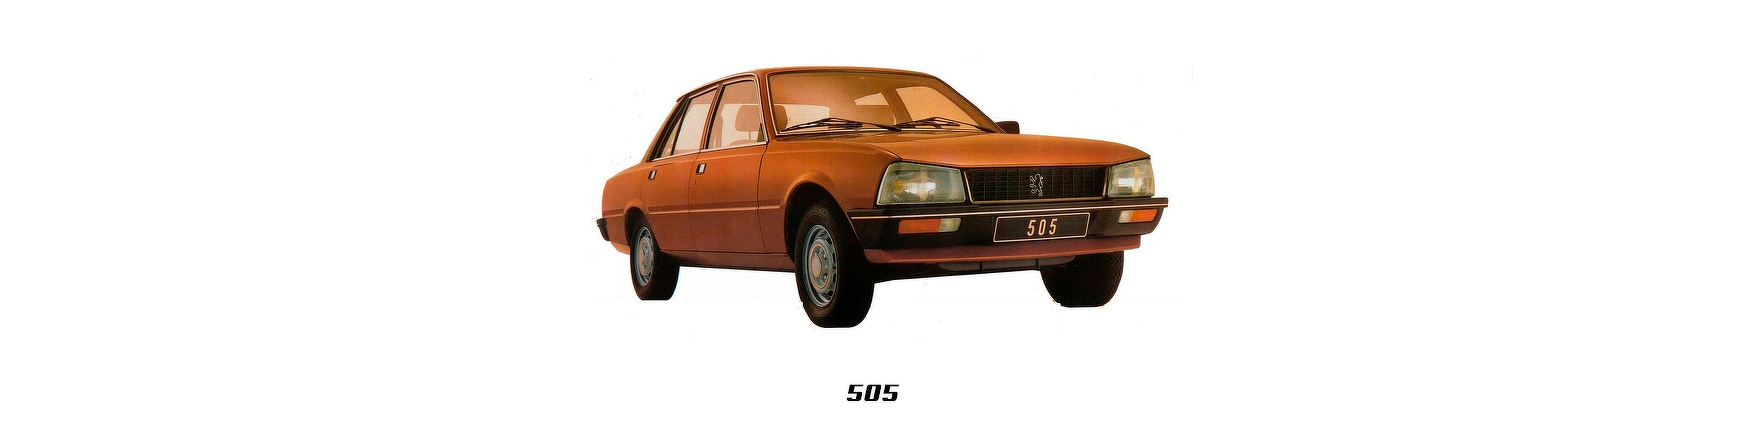 Piezas y Recambios de Peugeot 505 (551) de 1979 a 1992 | Veramauto.es